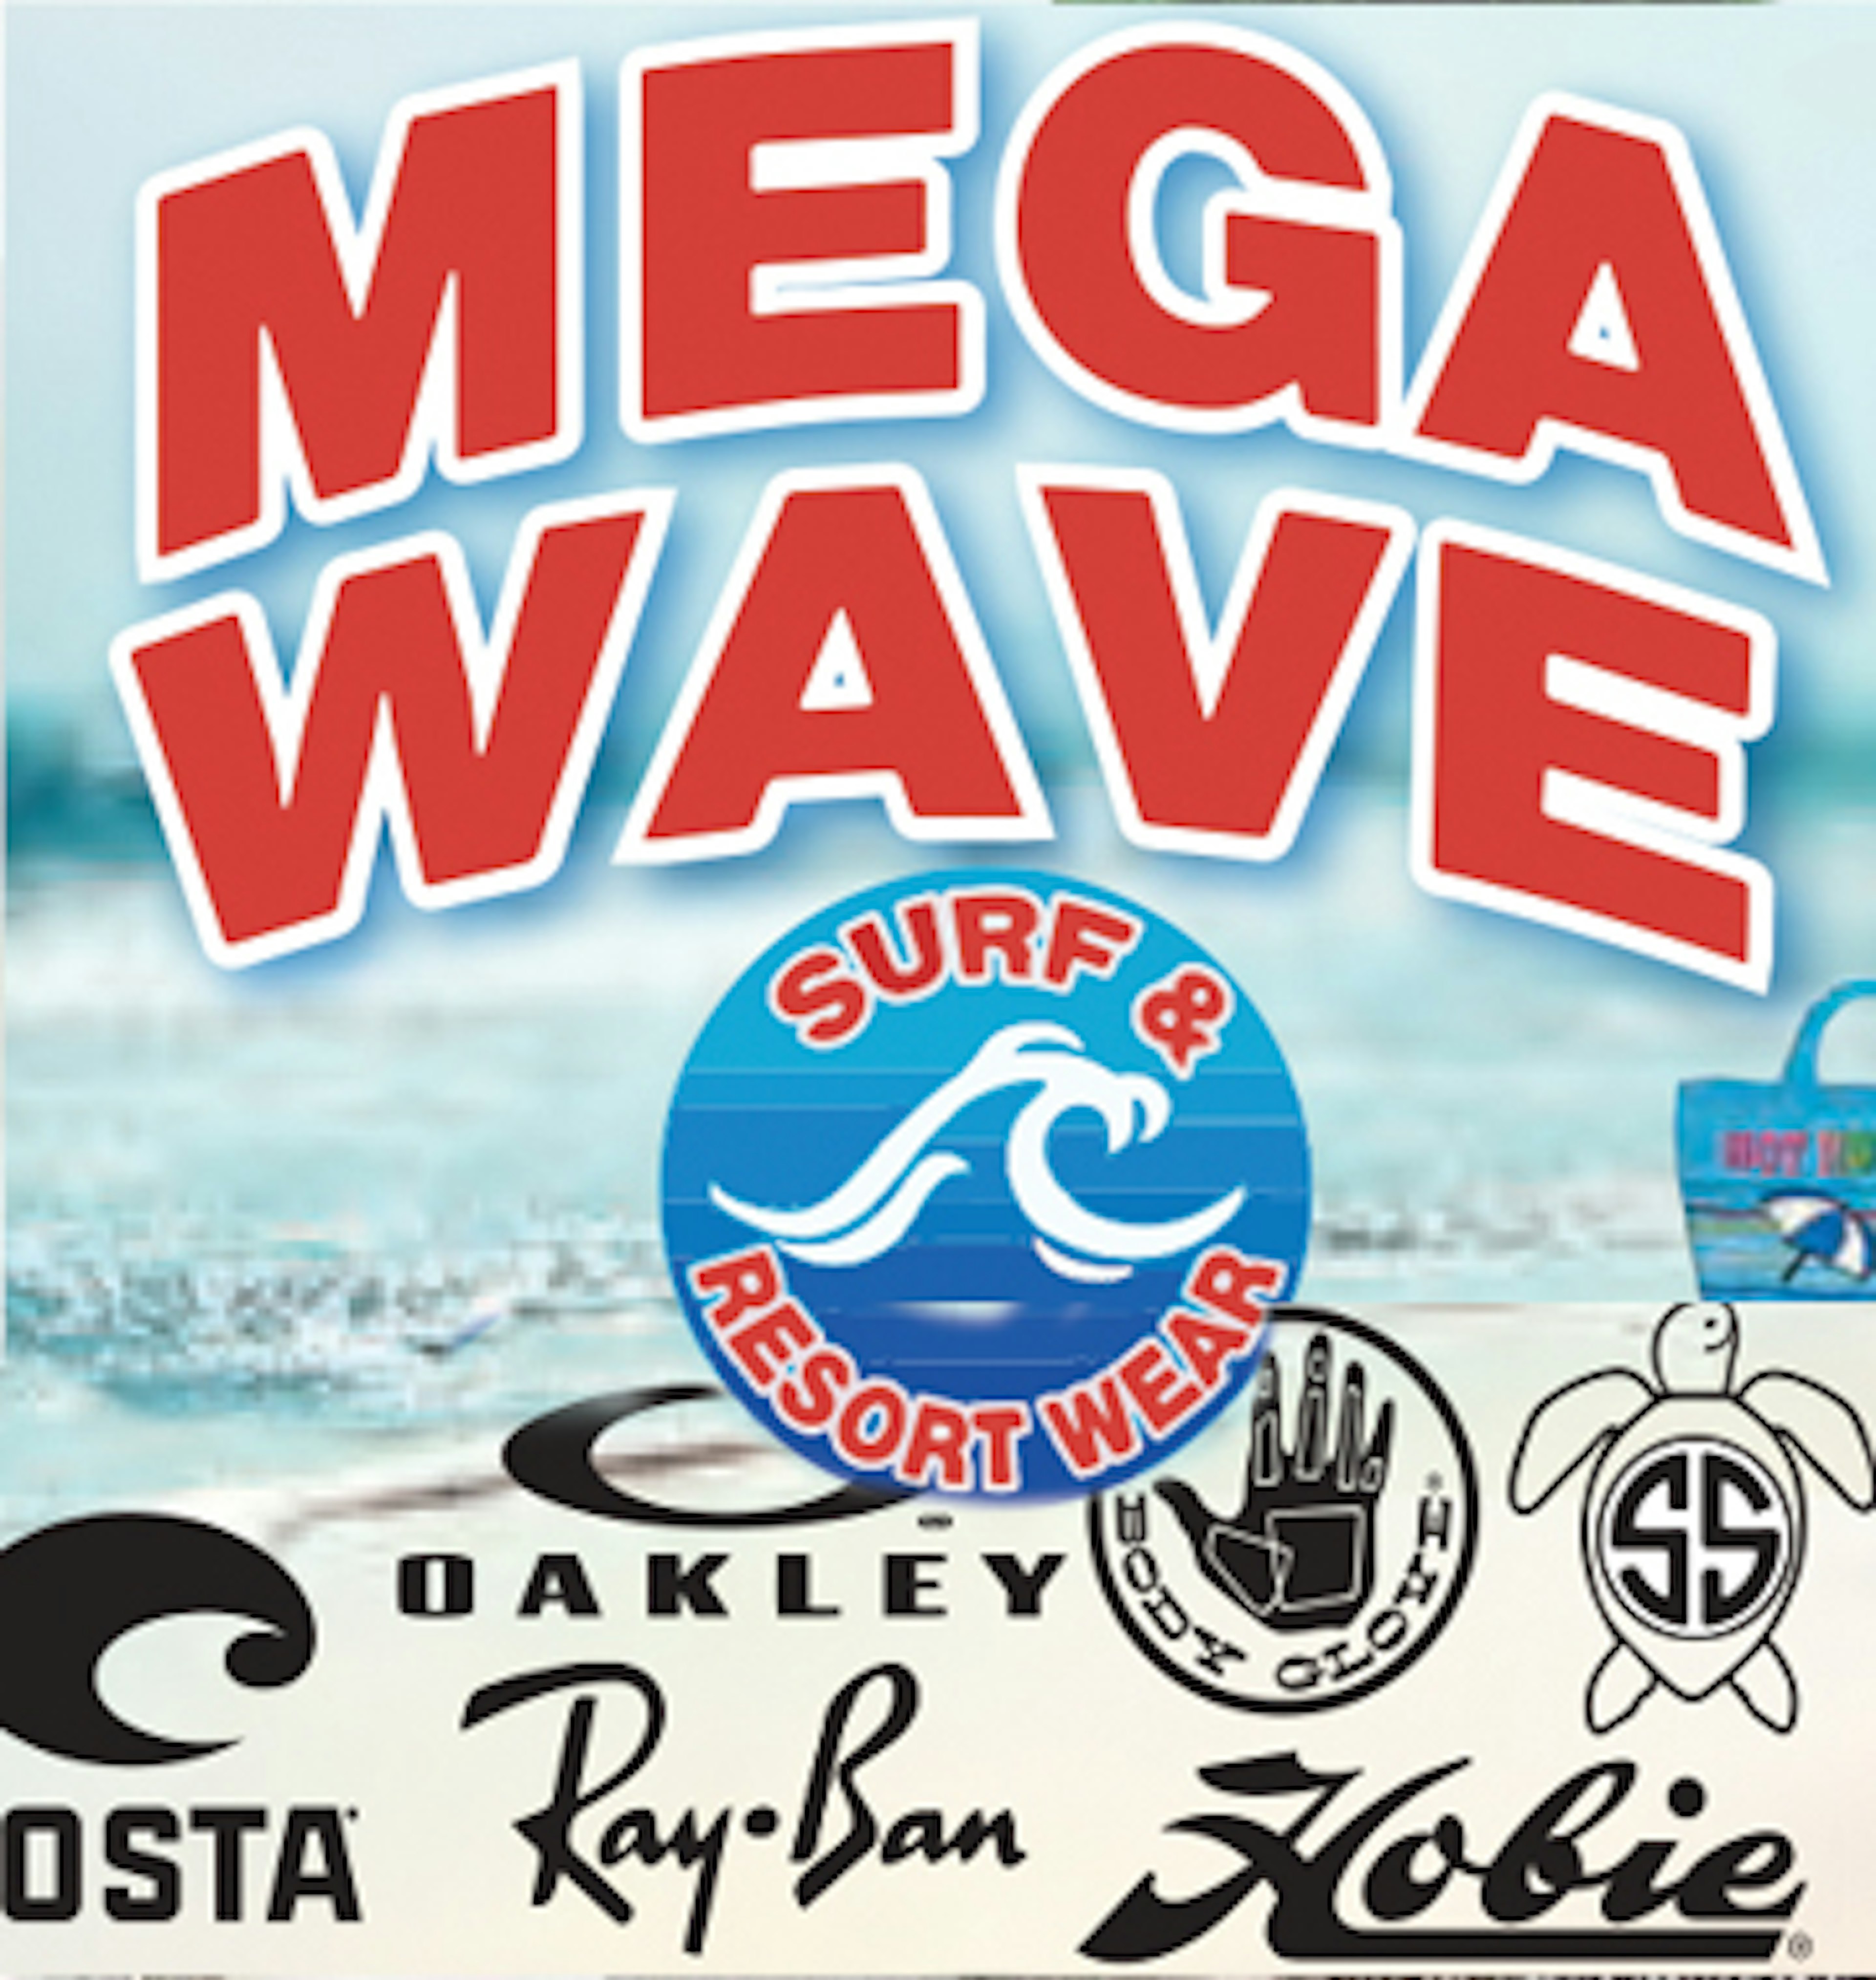 Mega Wave Surf & Resort Wear